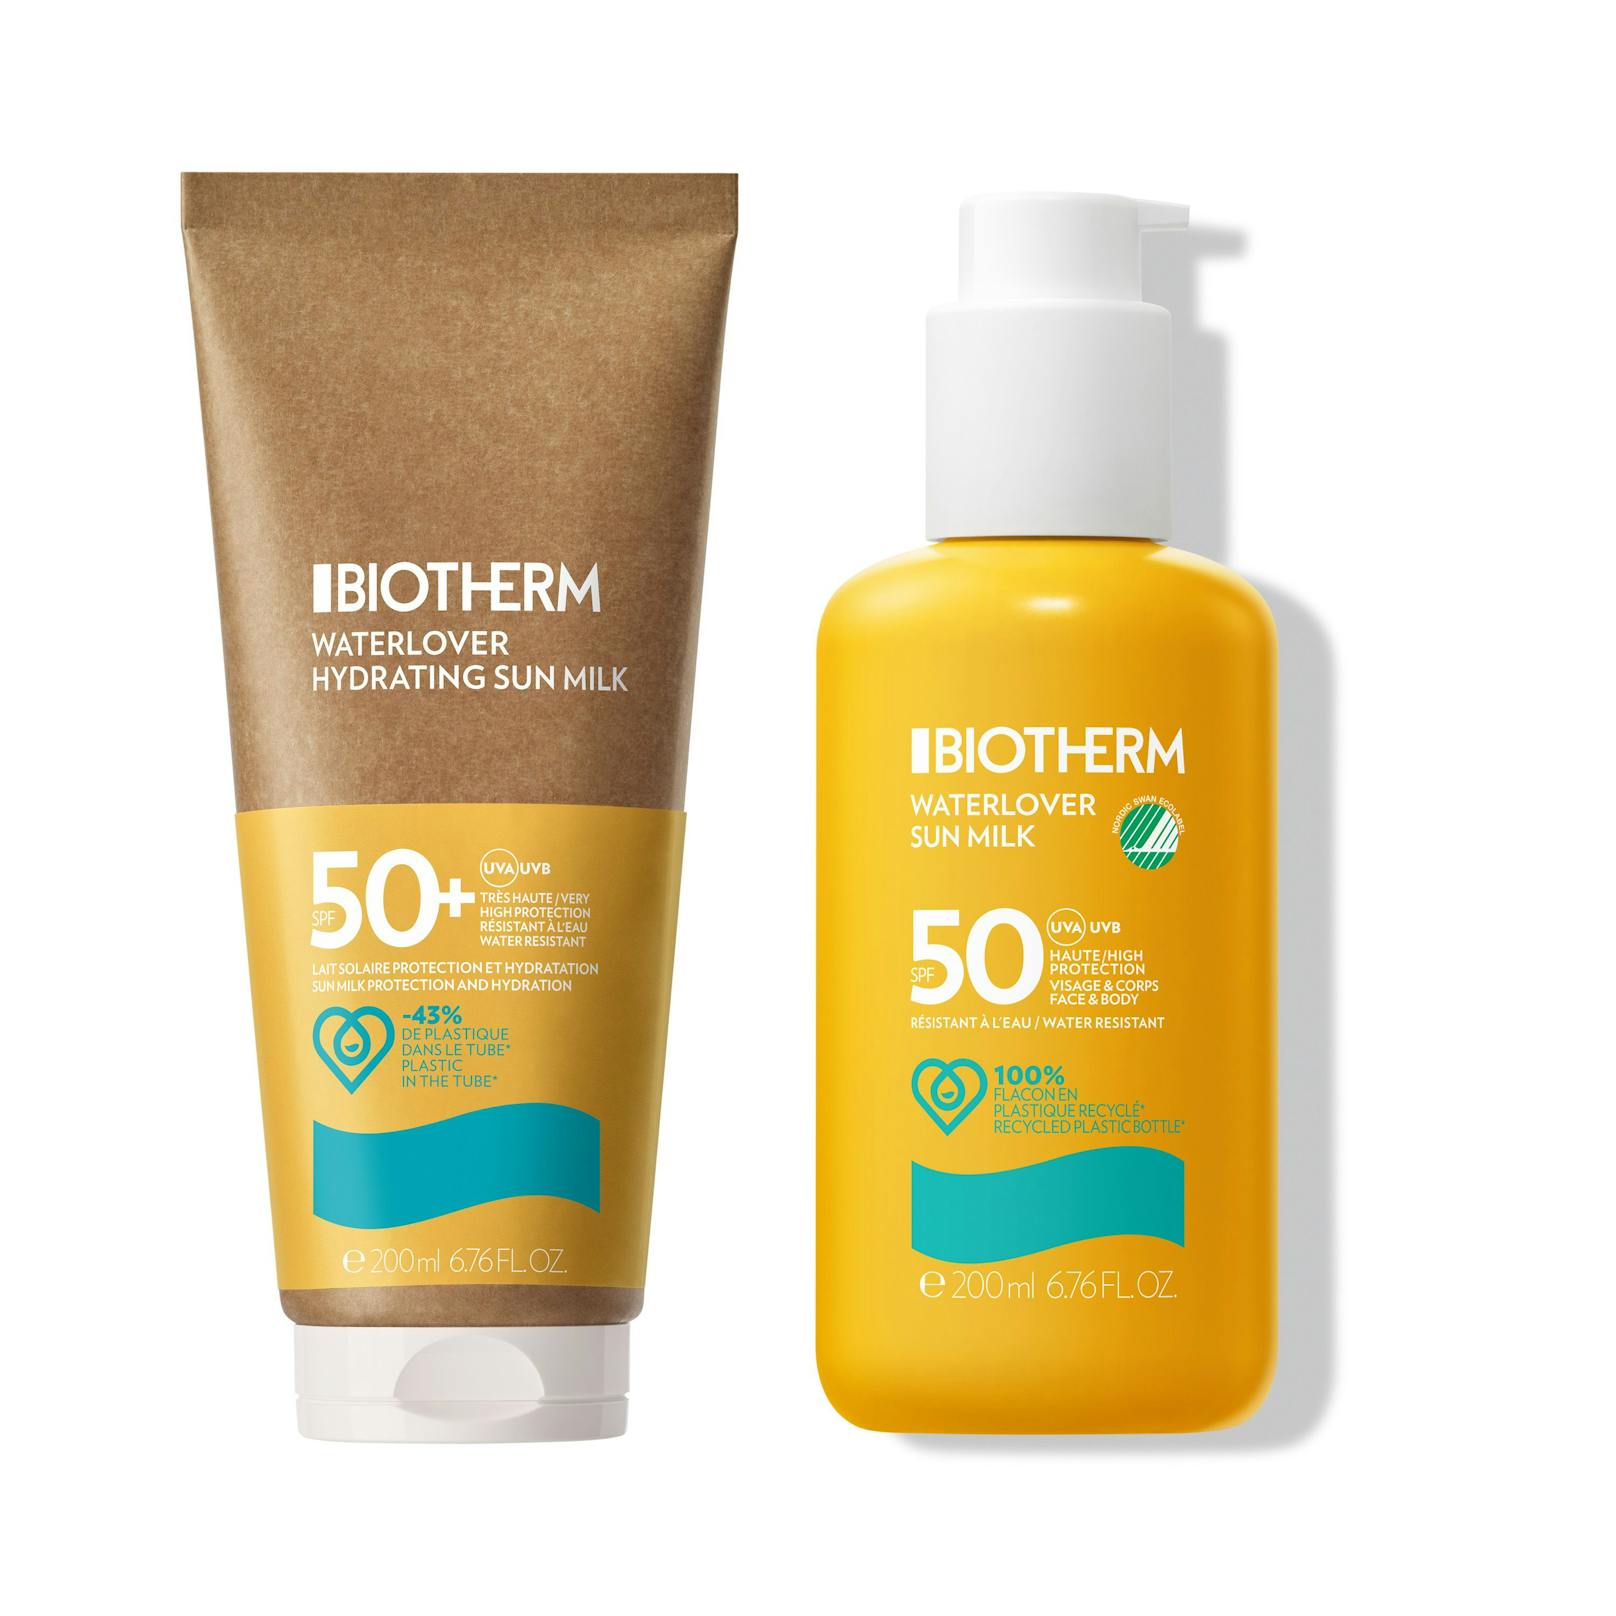 Die "Waterlover Sun Milk" von Biotherm (32 Euro) ist gut für die Haut, die Meere und Gewässer - und zudem auch noch <strong>wasserfest</strong>.